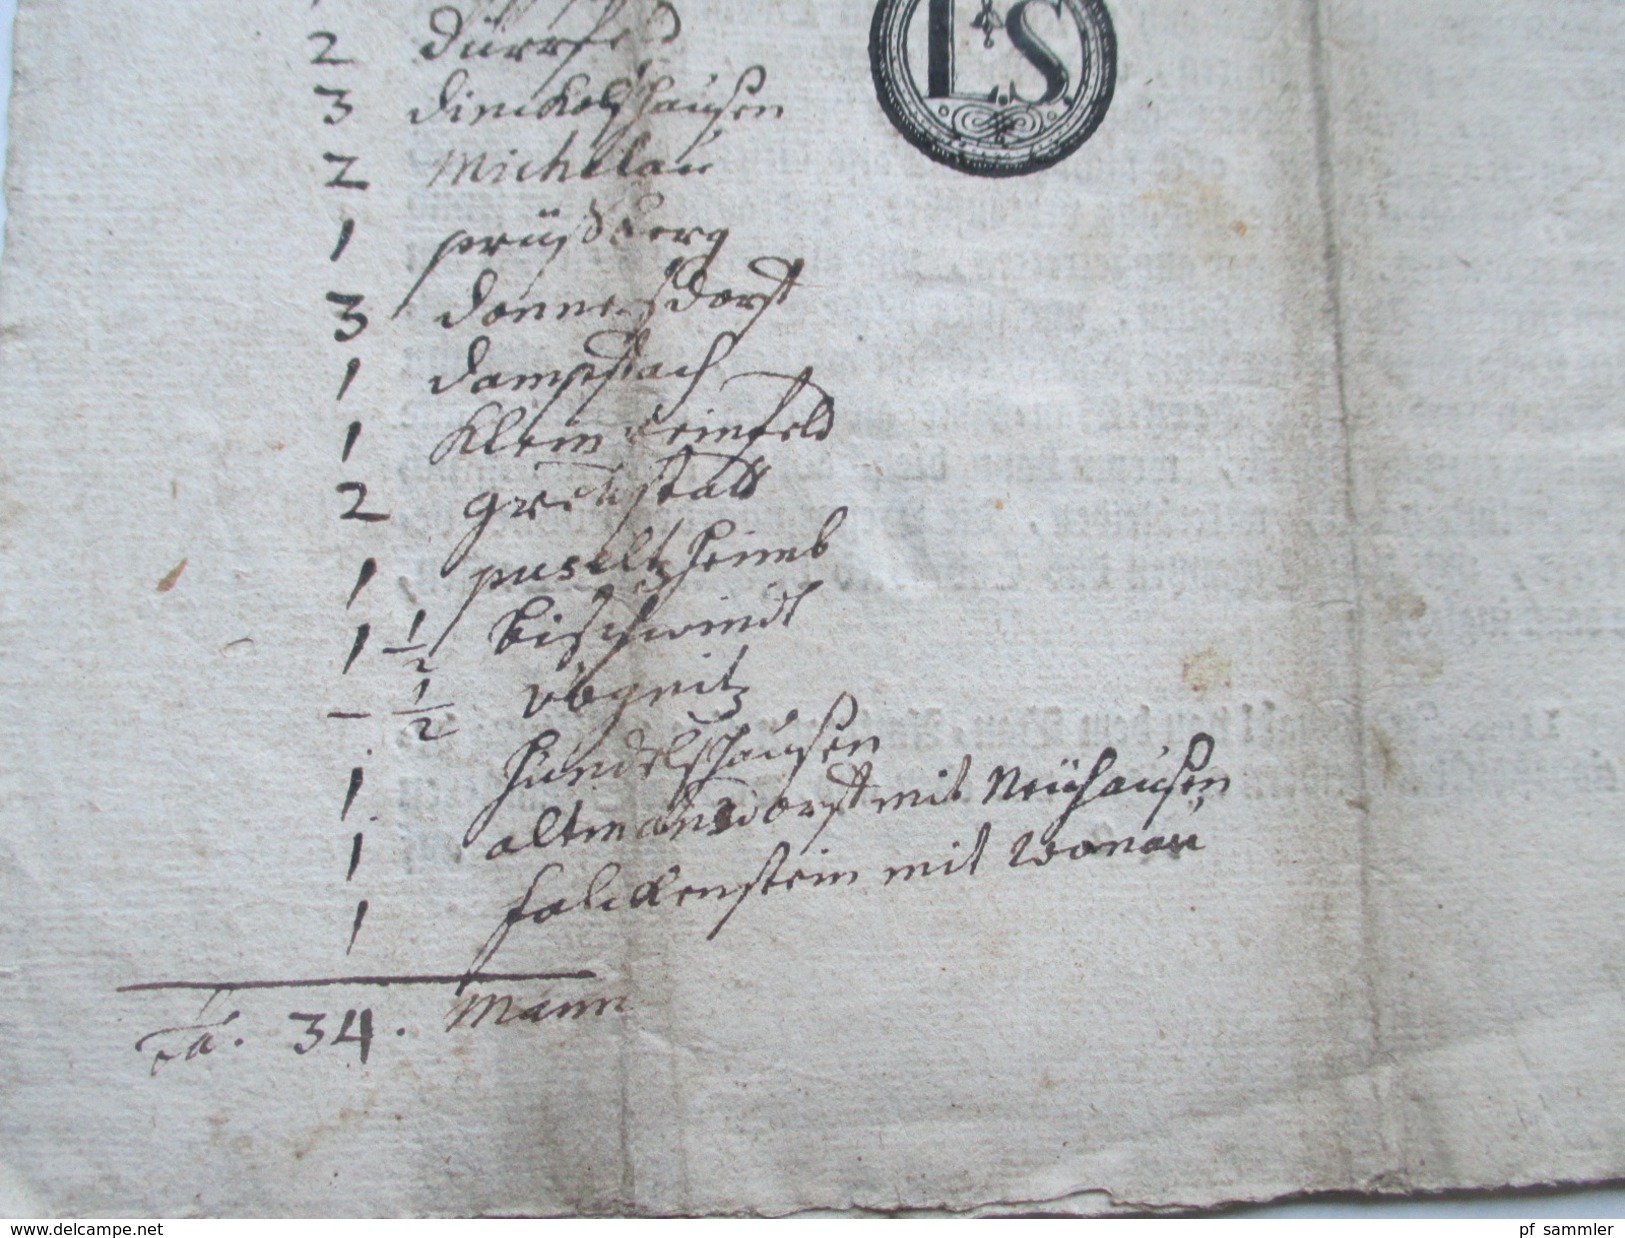 Hochfürstl. Wirzburg 1759 Dekret / Decretum. Von Gottes Gnaden Adam Friedrich Bischoff zu Bamberg und Wirzburg. RRR